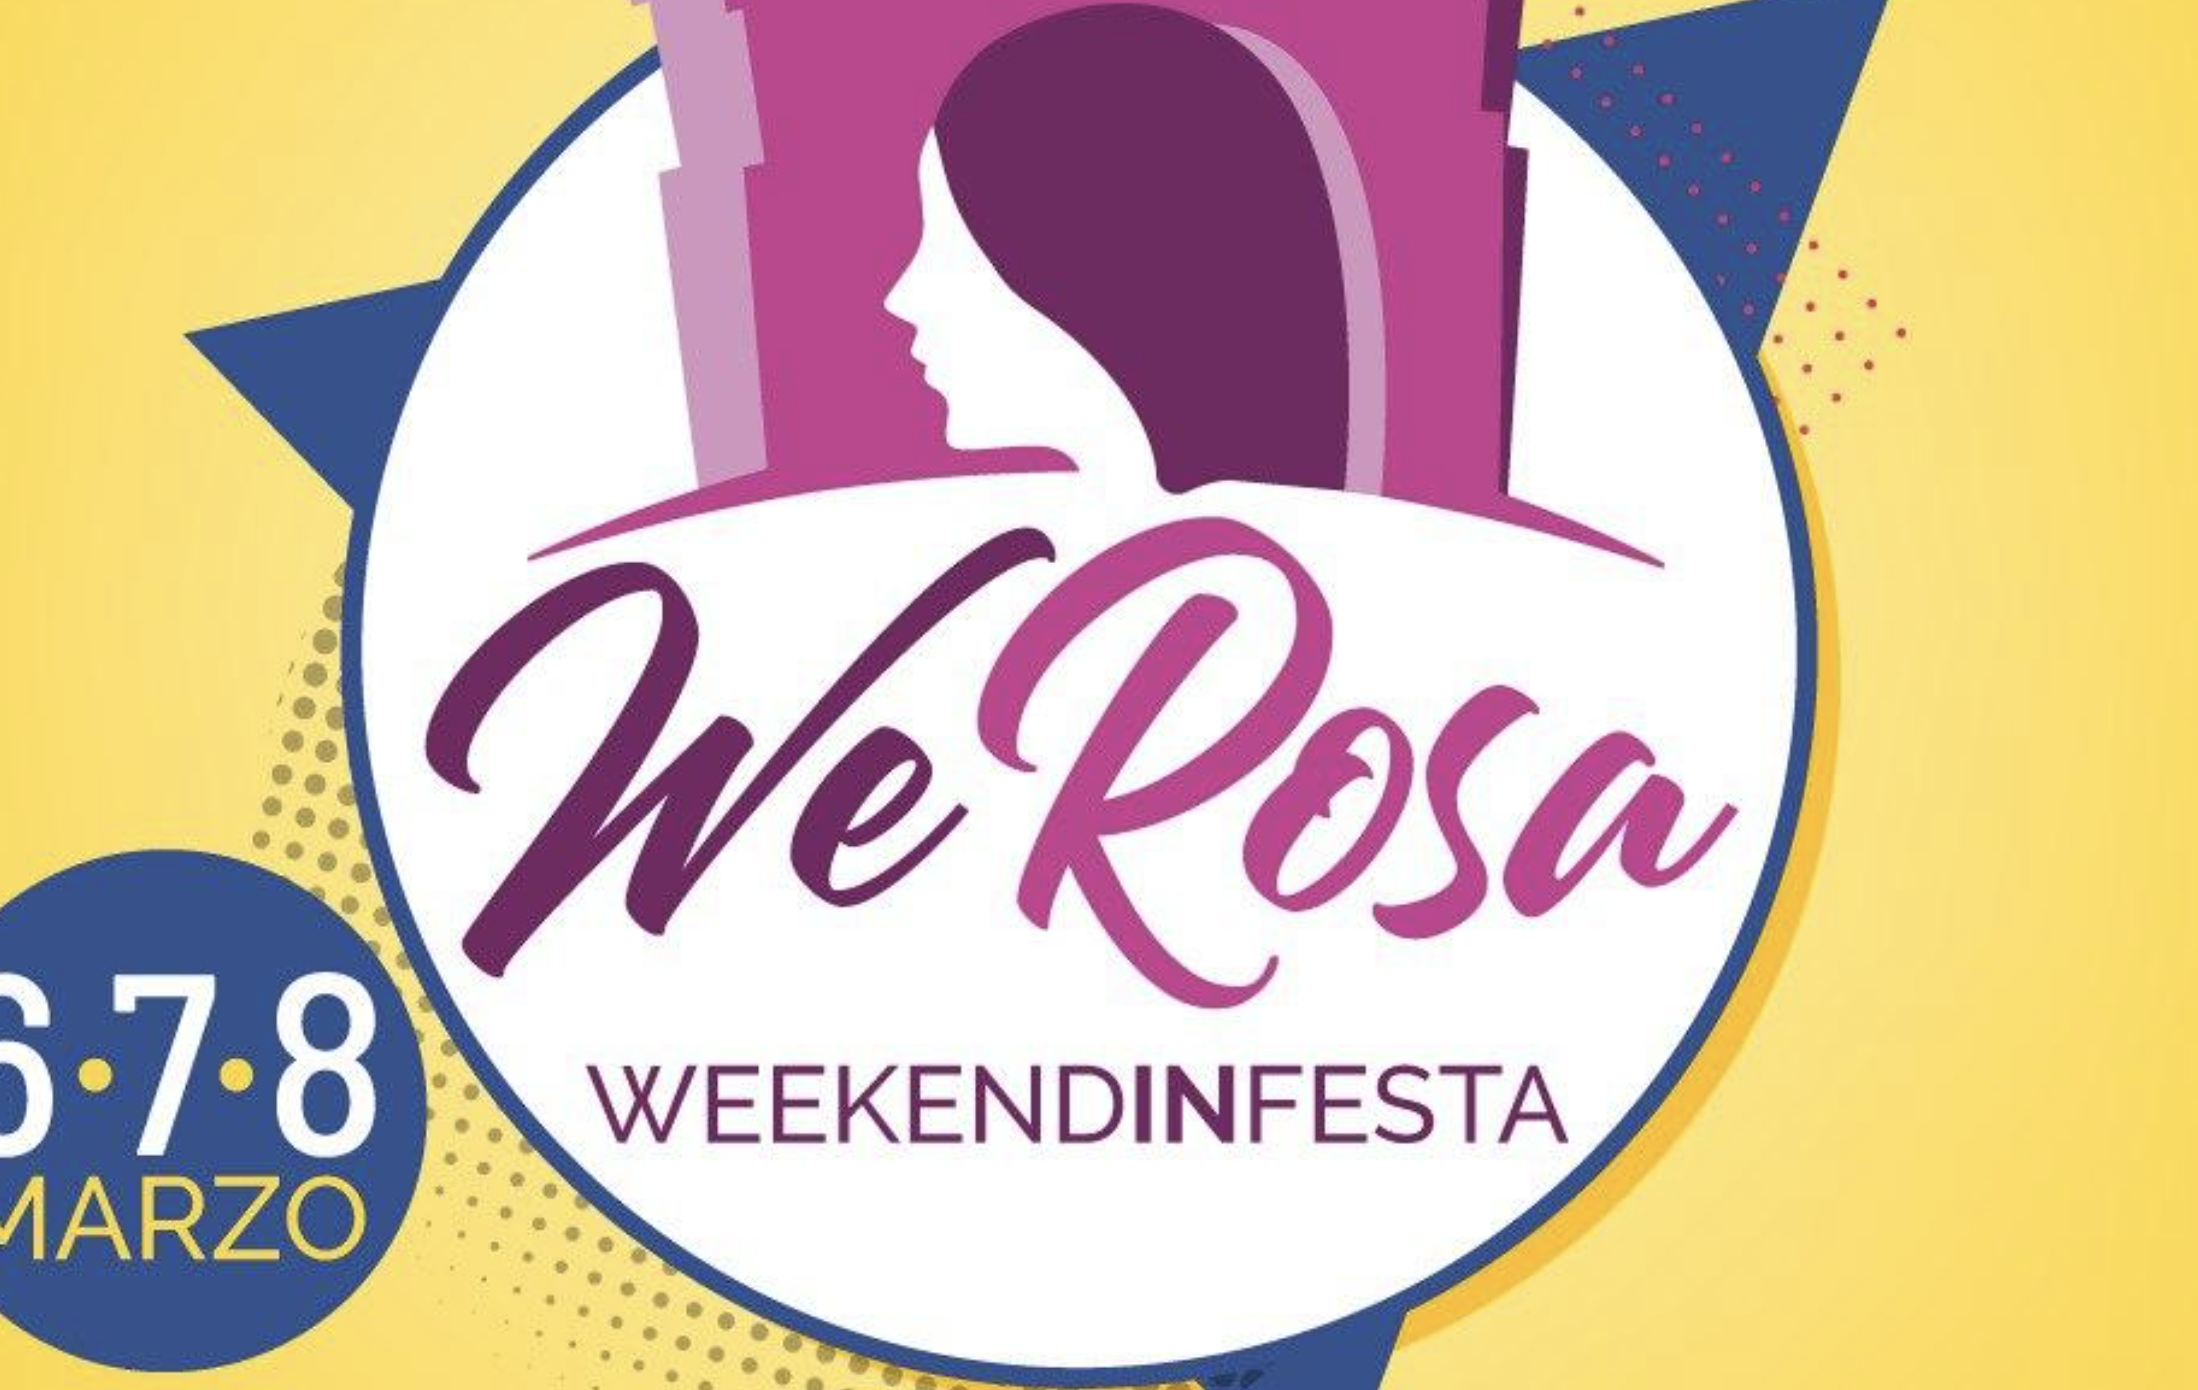 Monterotondo, Caterina Manco presenta WeRosa: 1.000 in marcia per le donne